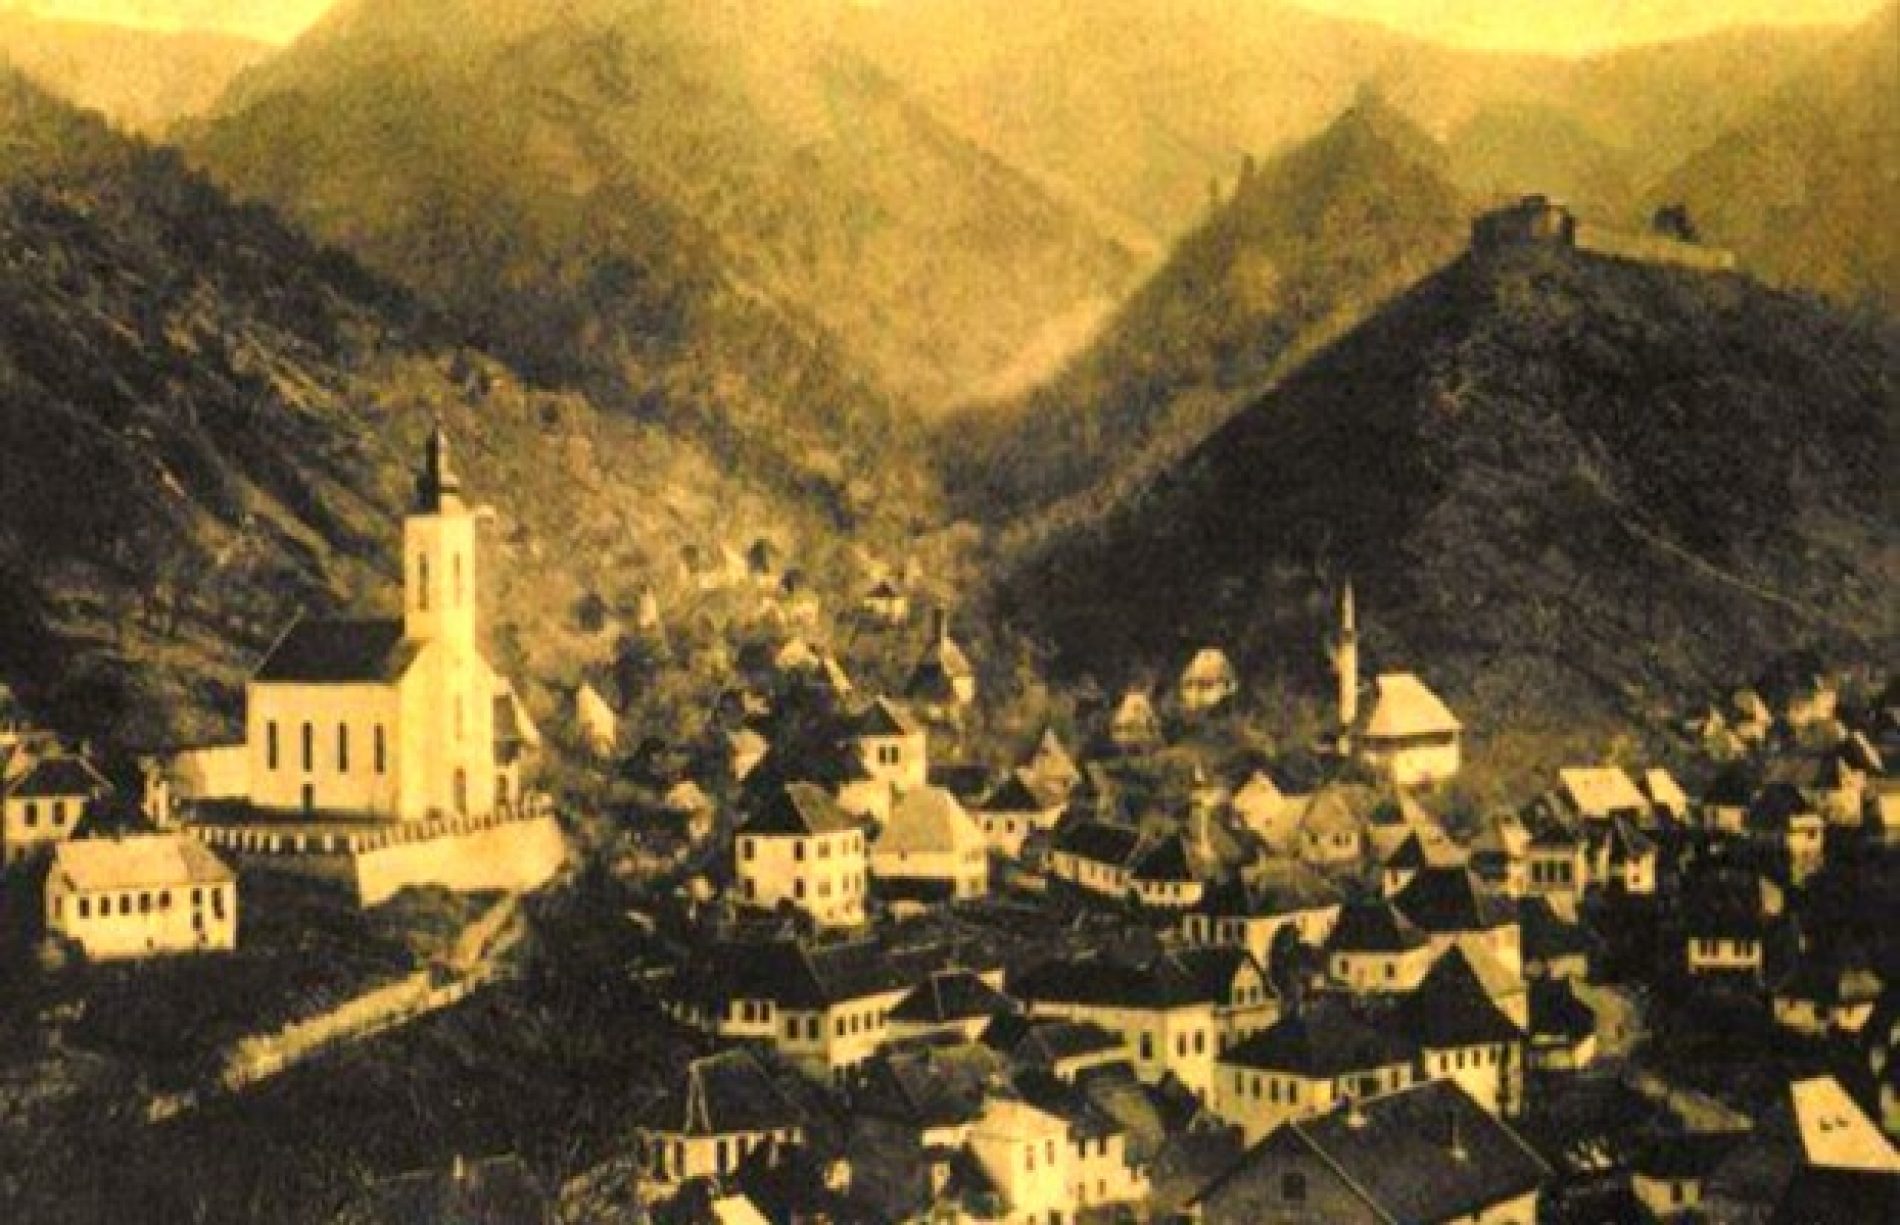 Ko i zašto želi promijeniti ime jednog od najstarijih bosanskih gradova!?